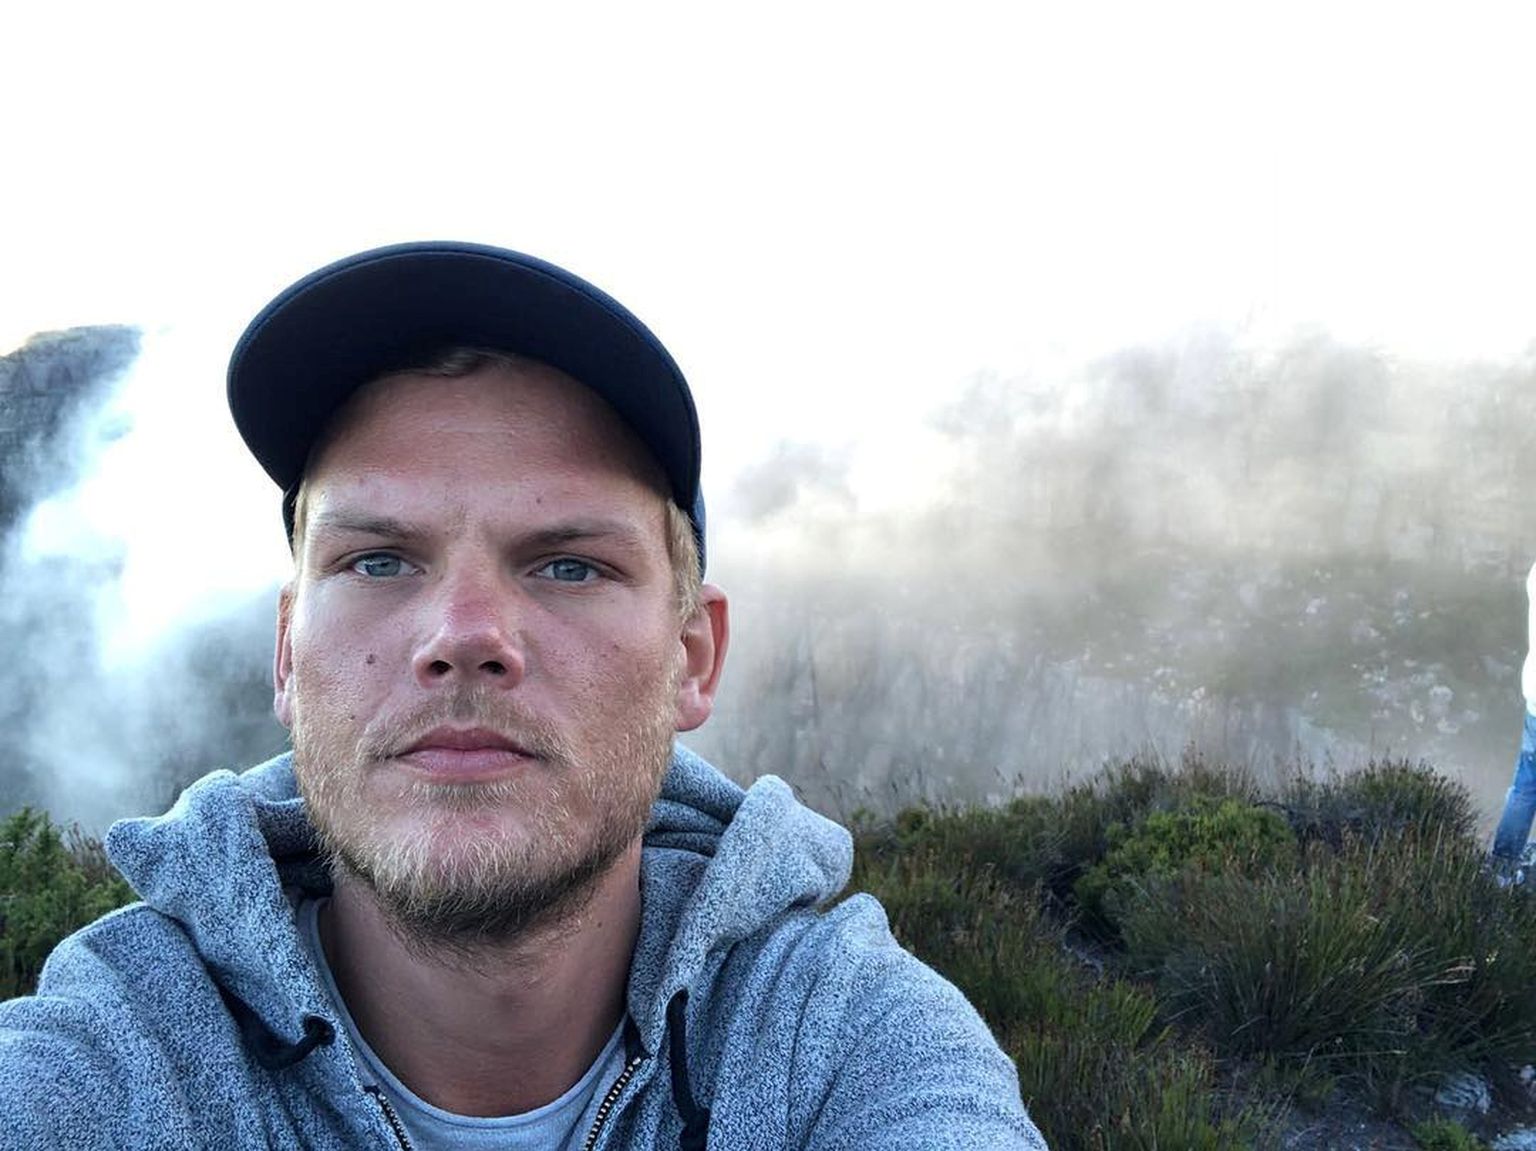 Rootsi muusik, DJ ja produtsent Avicii (Tim Bergling) Instagrami selfil.